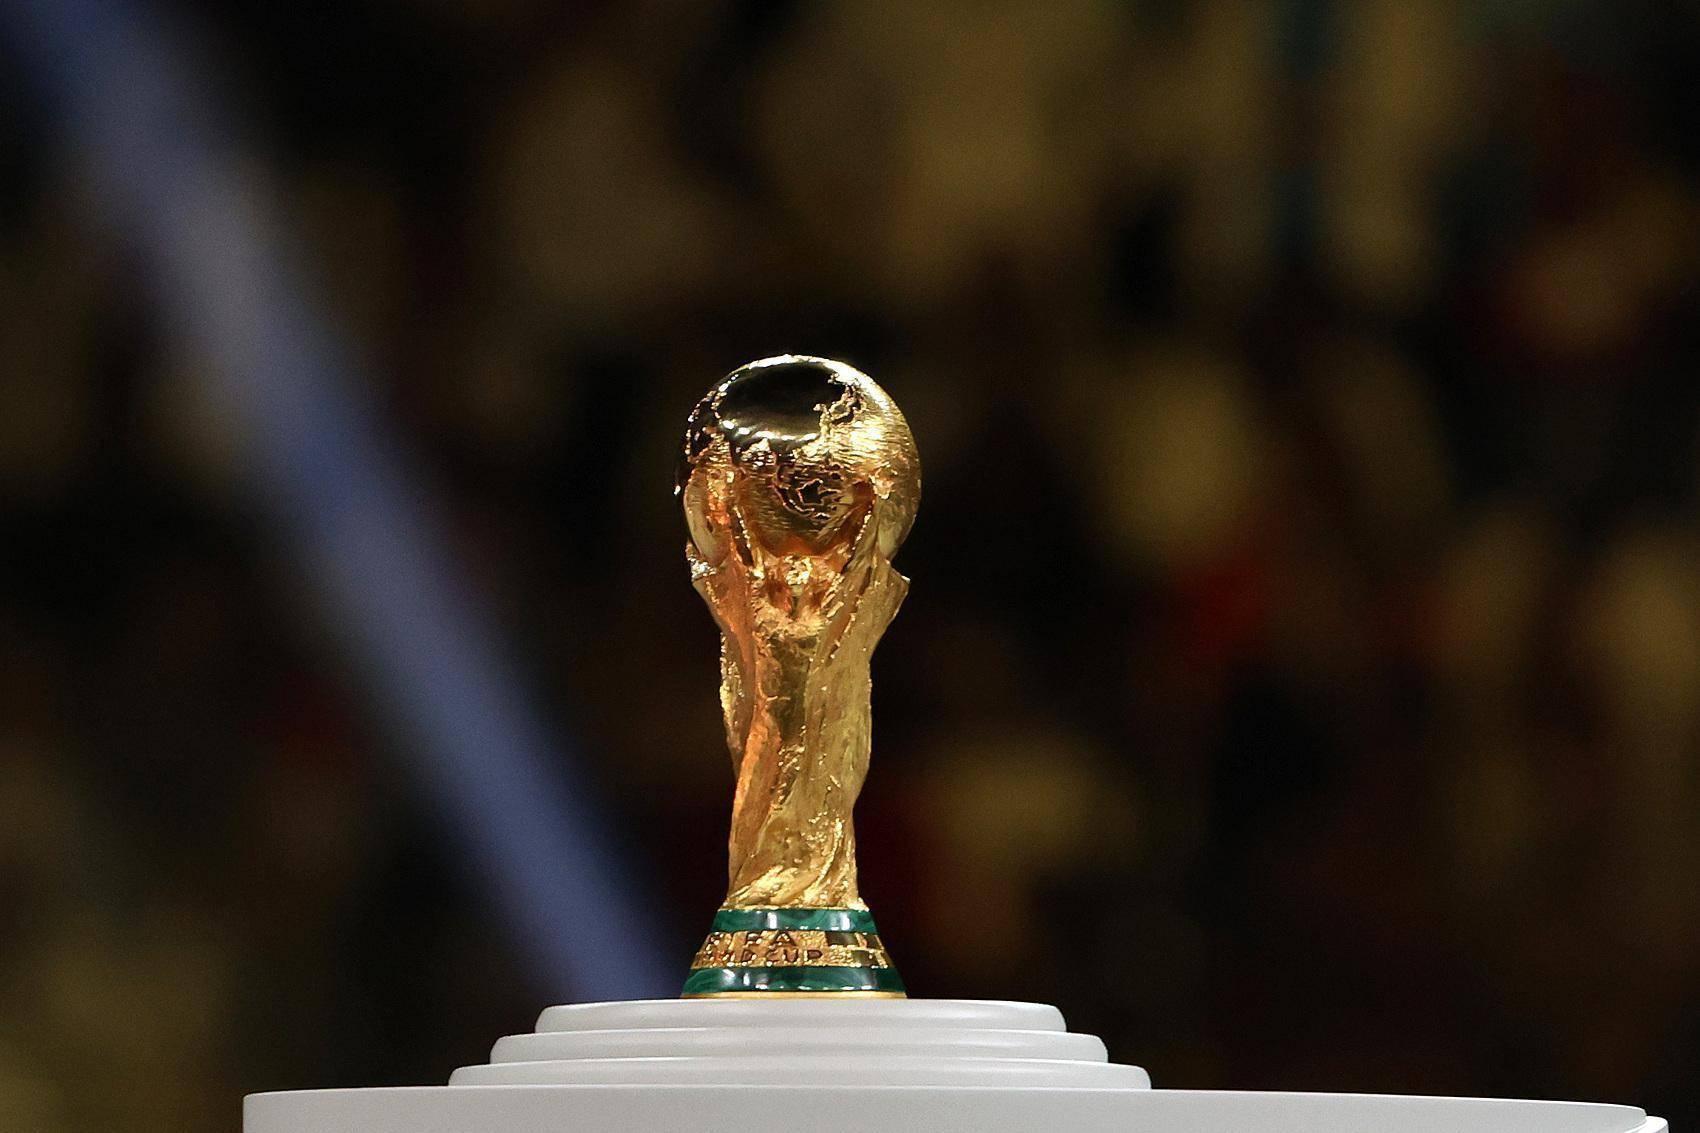 2034 年世界杯确认在沙特举办，对此你有何期待和预测？